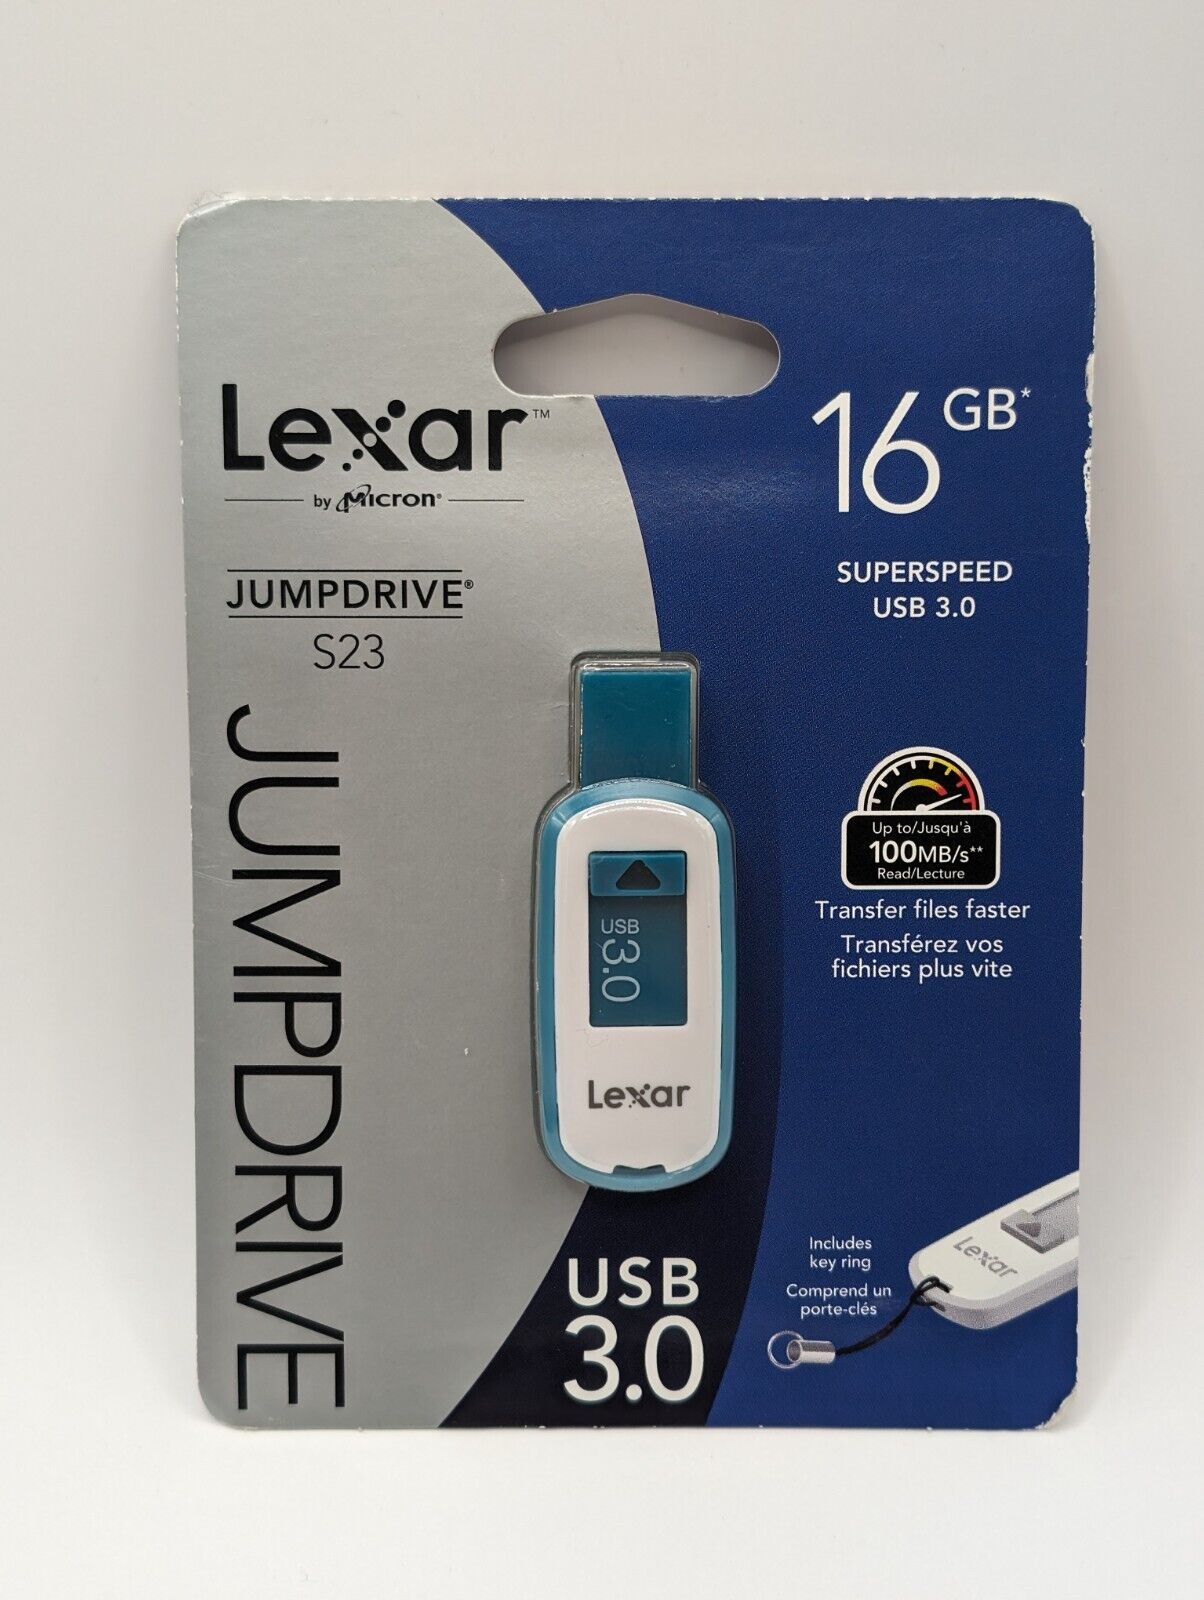 Lexar 16gb Jumpdrive S23 Superspeed USB 3.0